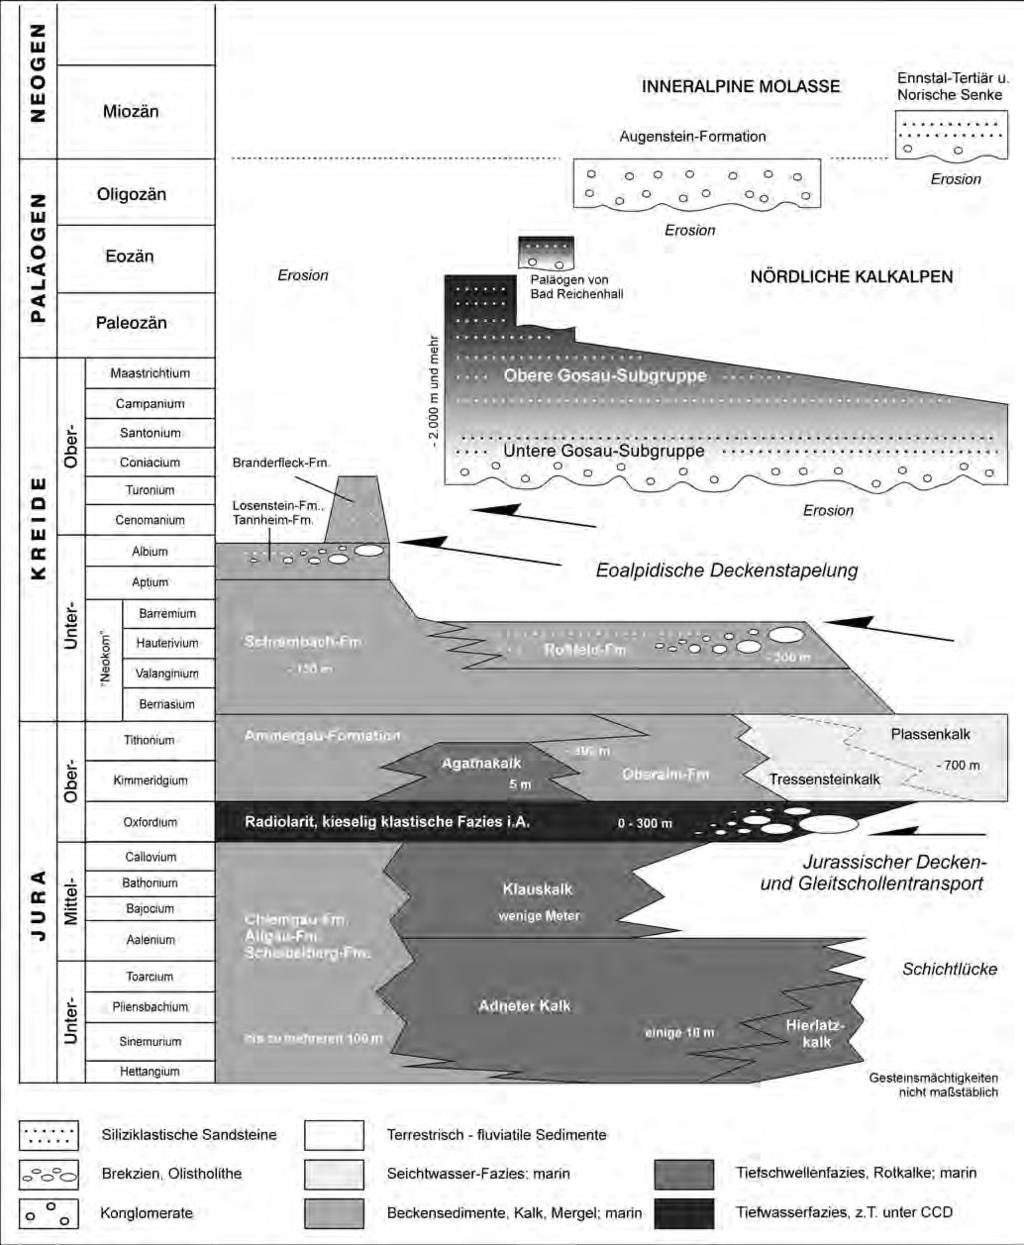 Abb. 8: Stratigraphie und seitliche Faziesübergänge der jurassischen, kretazischen und